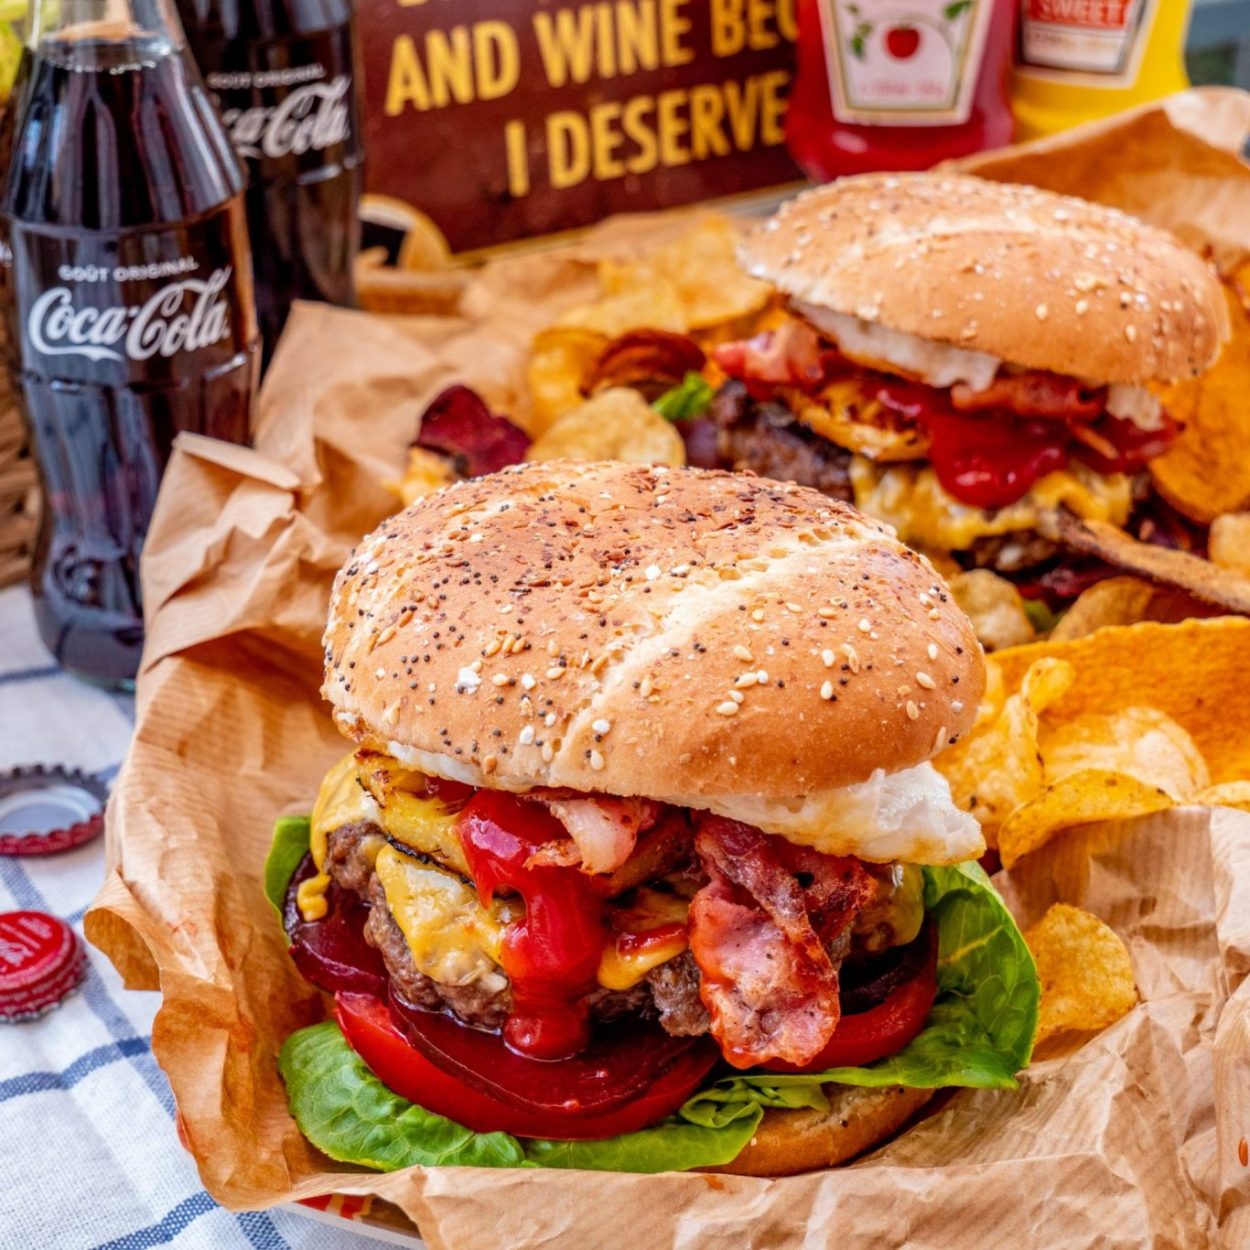 Aussie burger – Burger australien